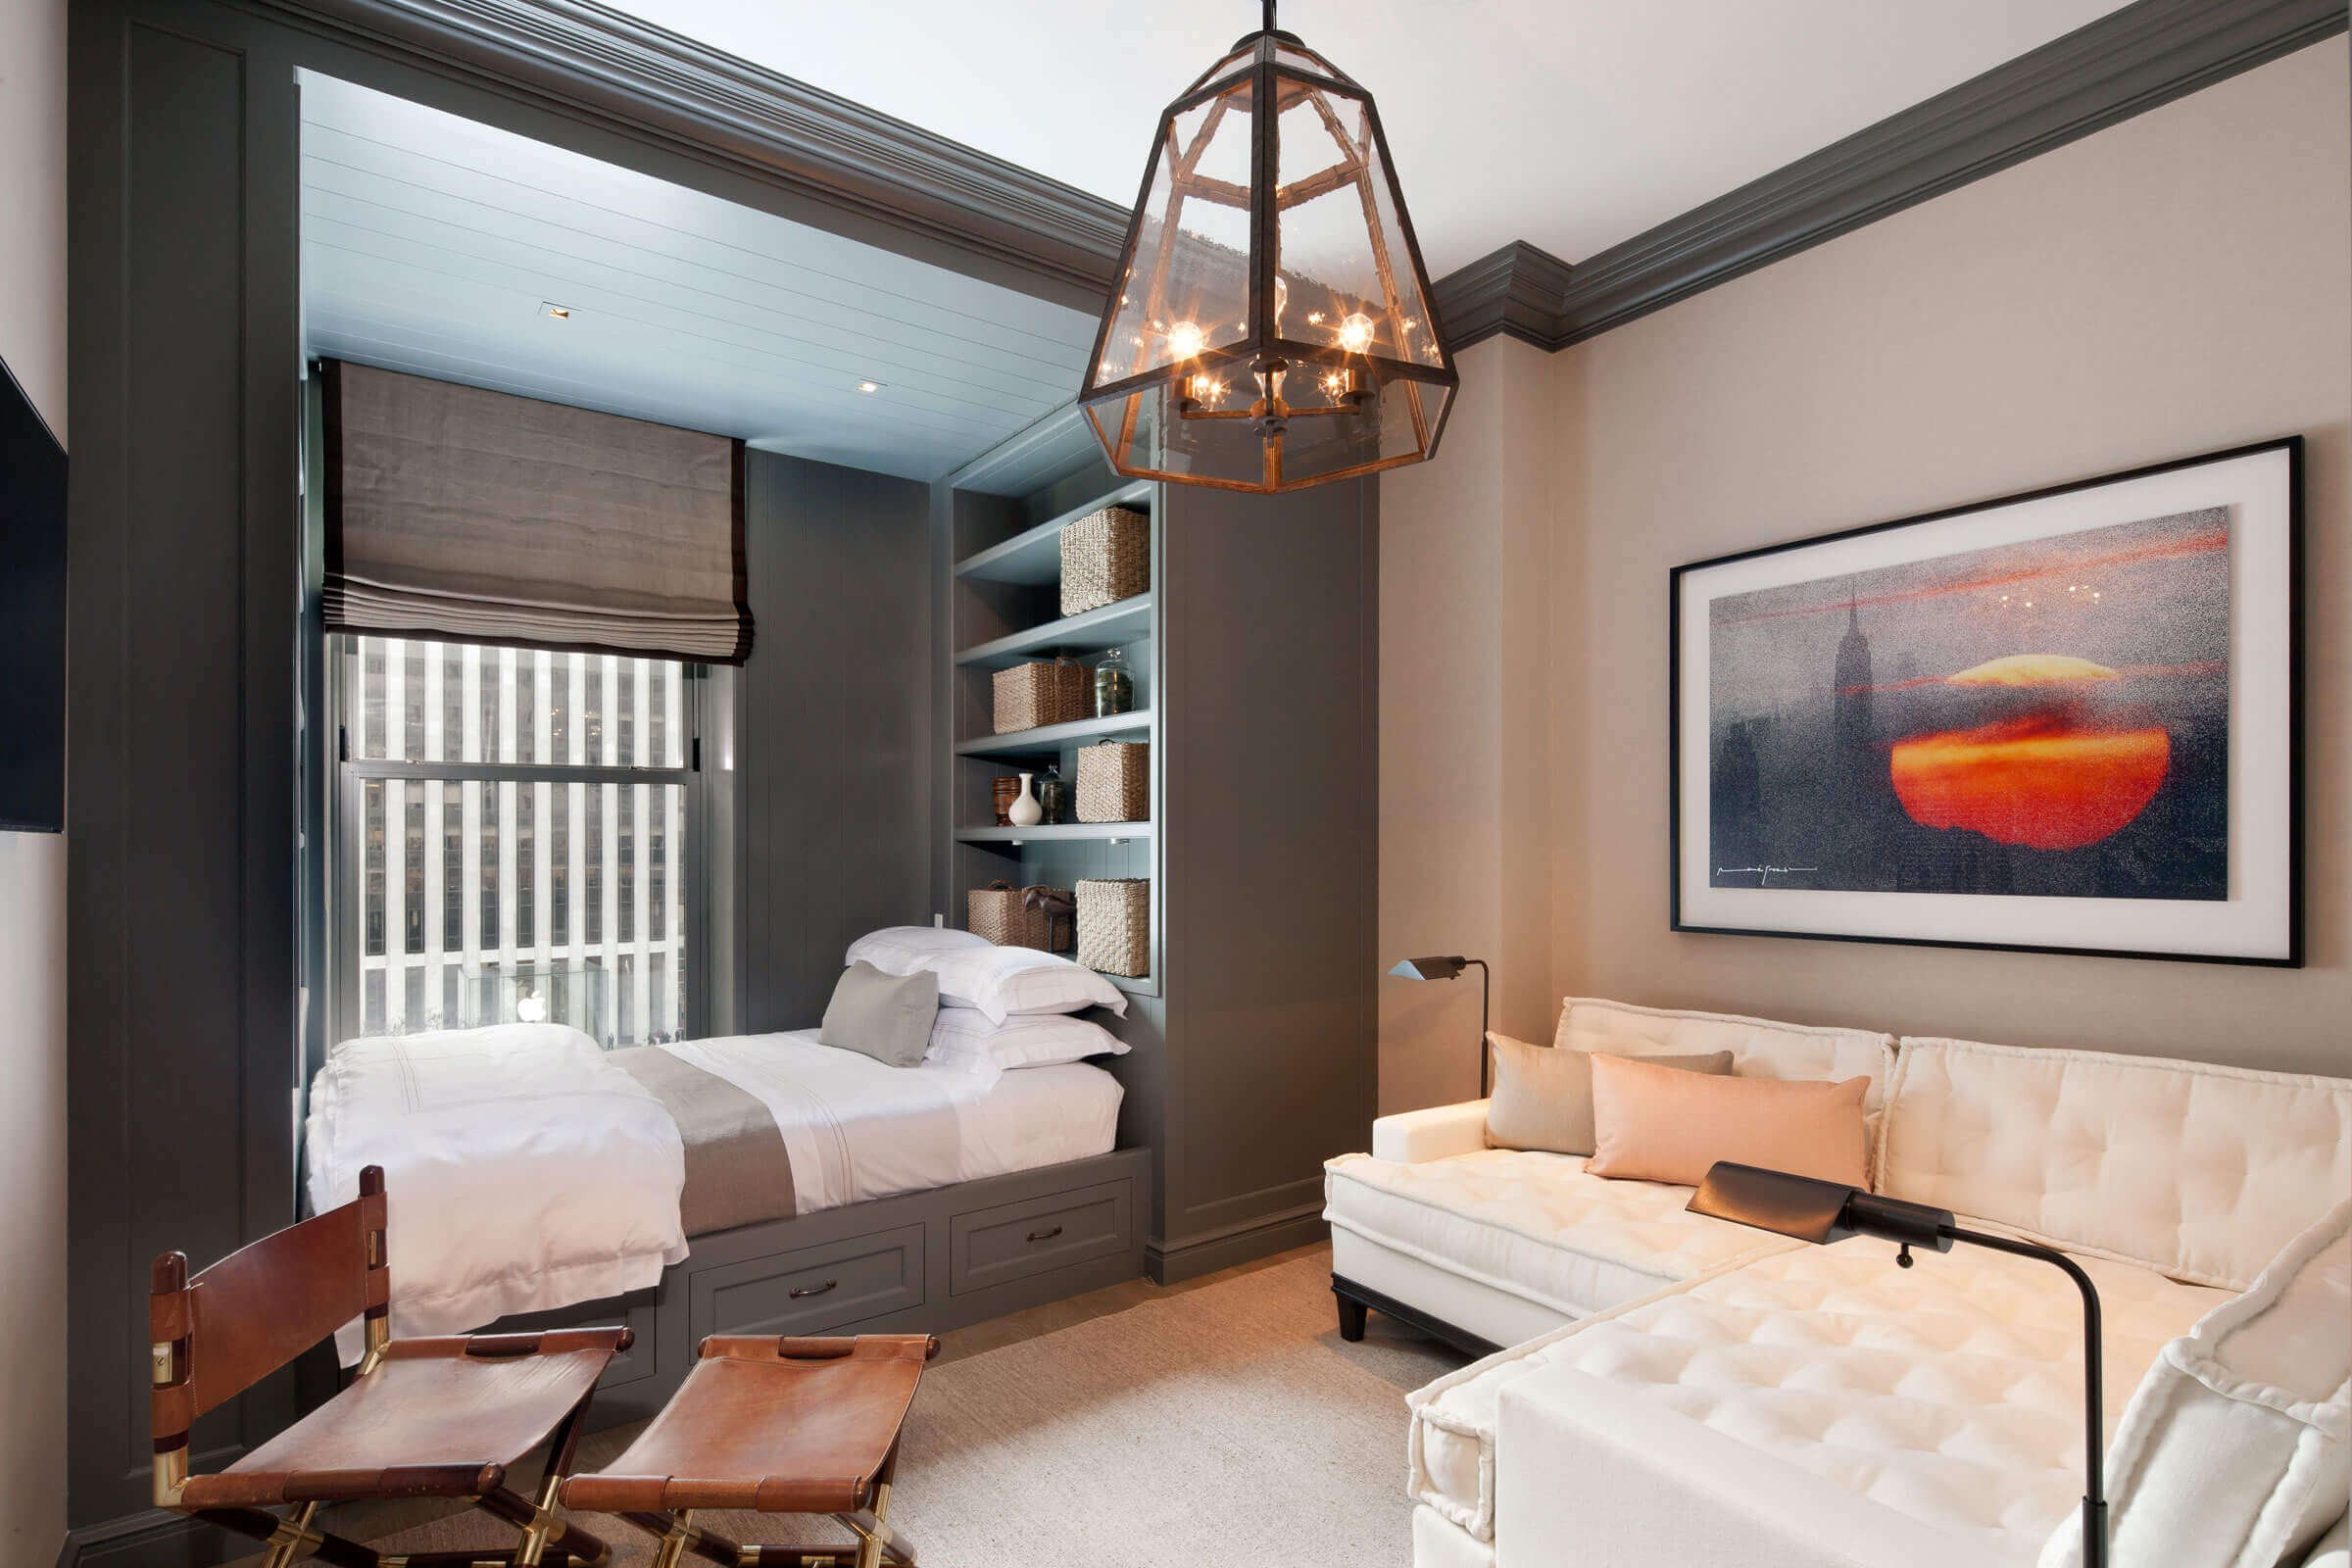 Спальня 18 кв. м. — 150 фото свежих идей дизайна. лучшая планировка современной спальни 18 м².